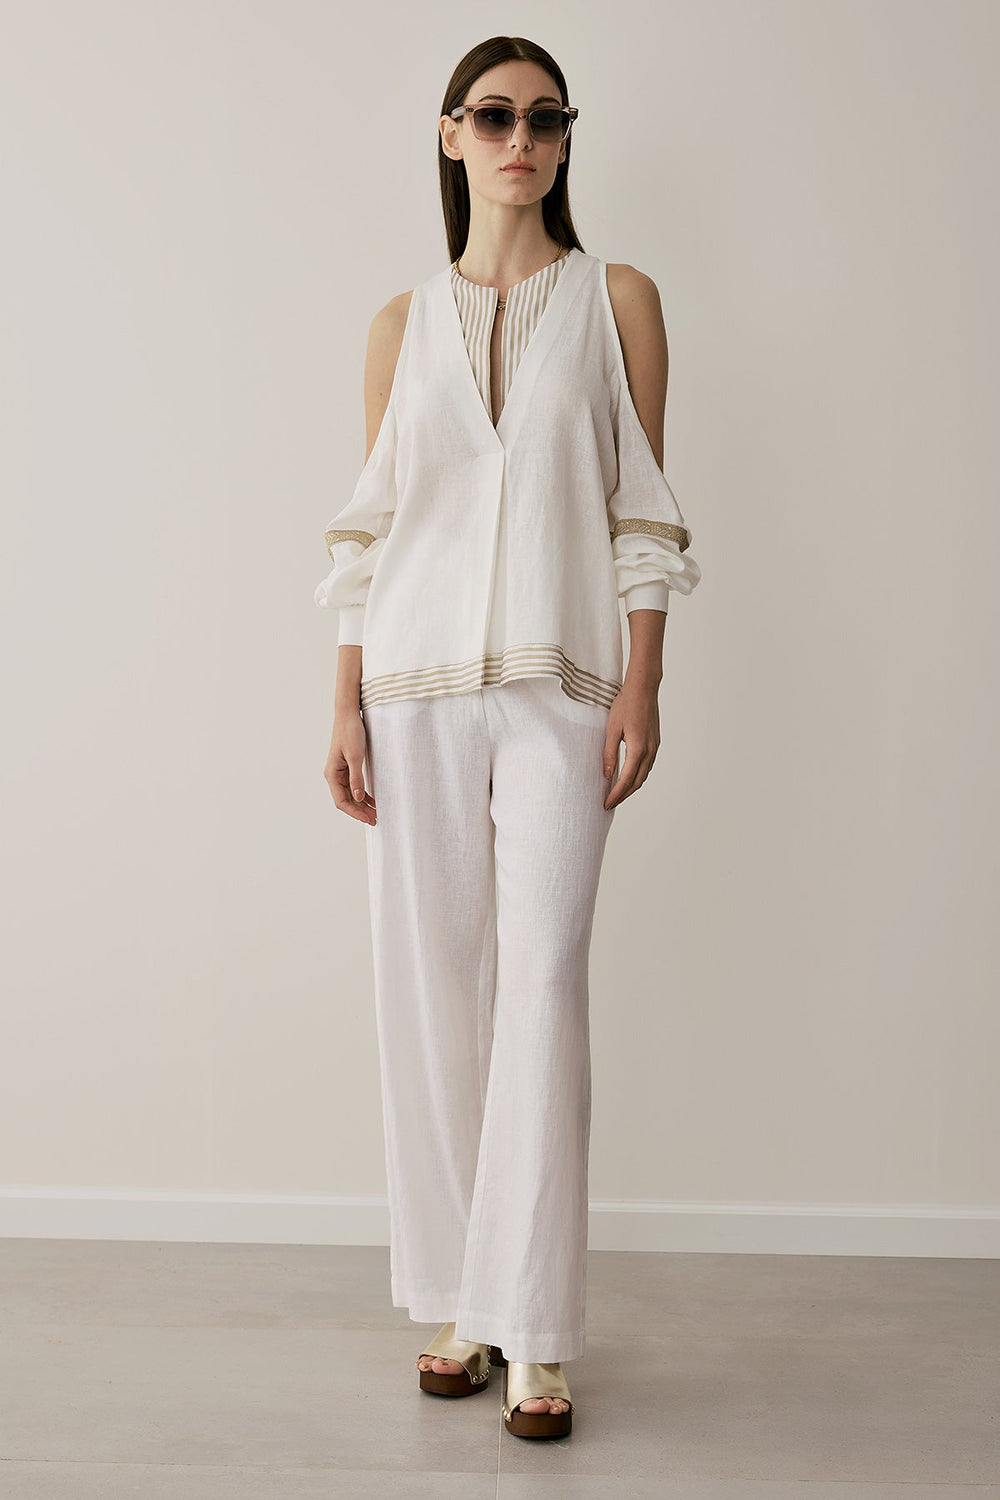 Μπλούζα με ανοιχτούς ώμους και ανοίγματα Figaro Fashion - A Collection Boutique